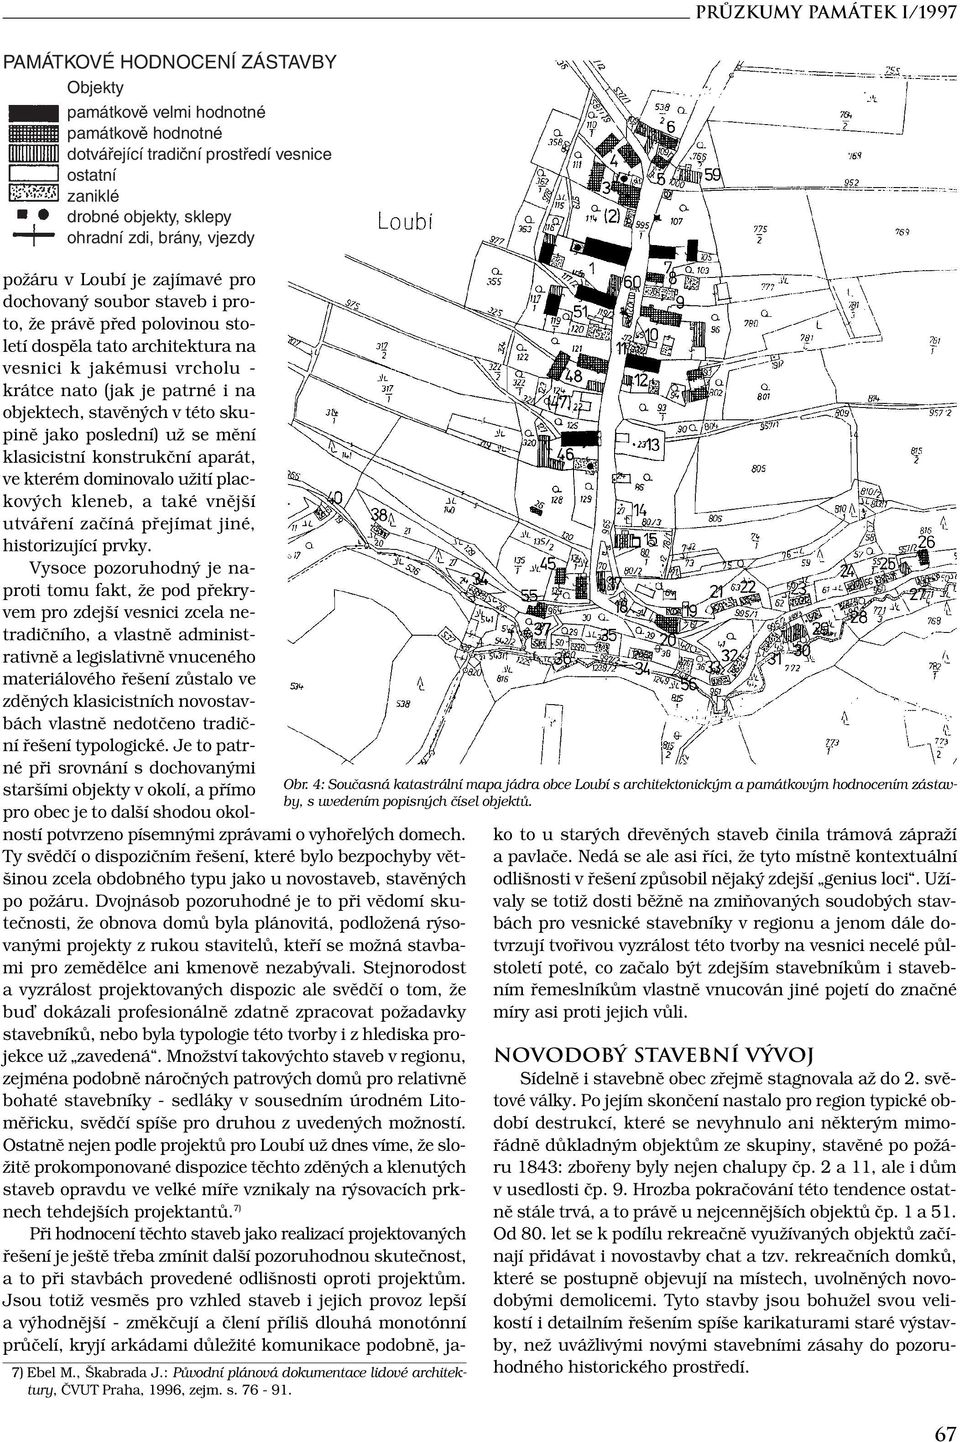 4: Současná katastrální mapa jádra obce Loubí s architektonickým a památkovým hodnocením zástavby, s uvedením popisných čísel objektů.